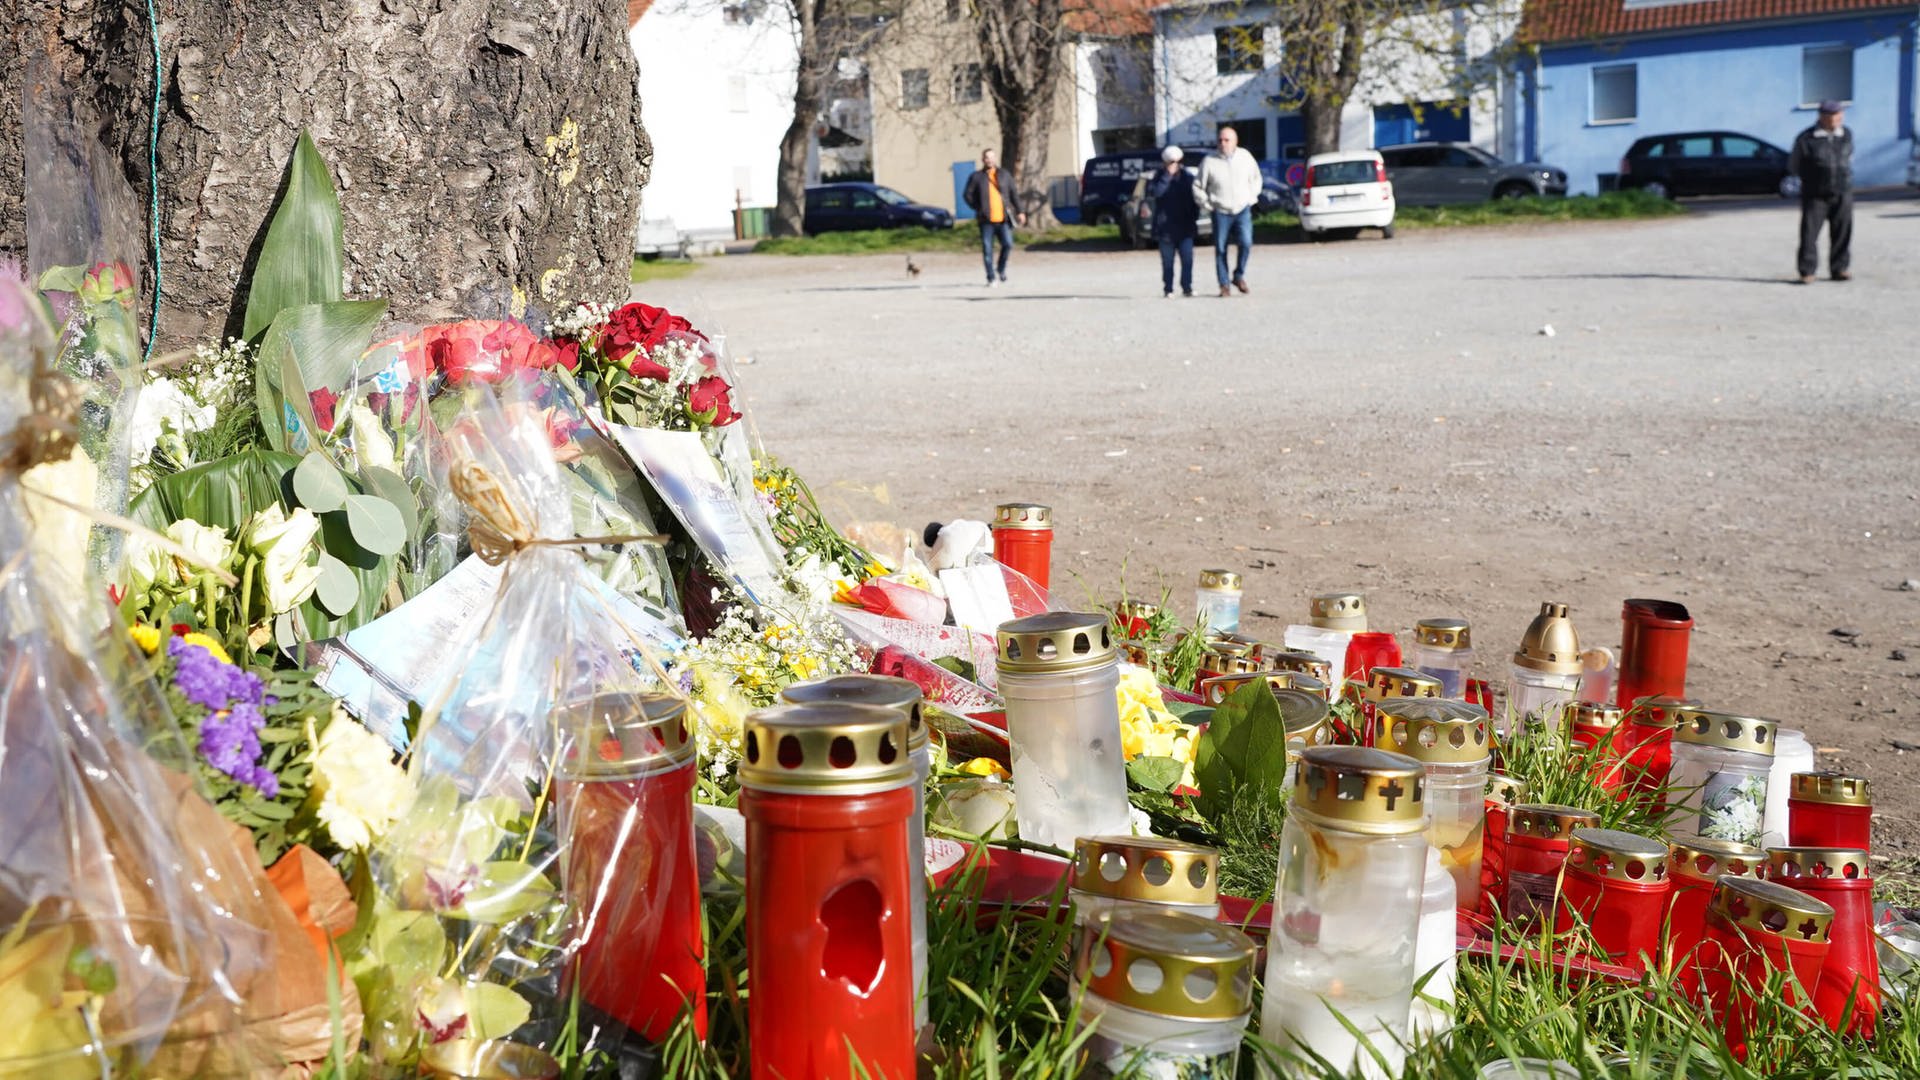 Blumen am Tatort in Asperg, wo ein 18-Jähriger erschossen wurde (Foto: dpa Bildfunk, Picture Alliance)